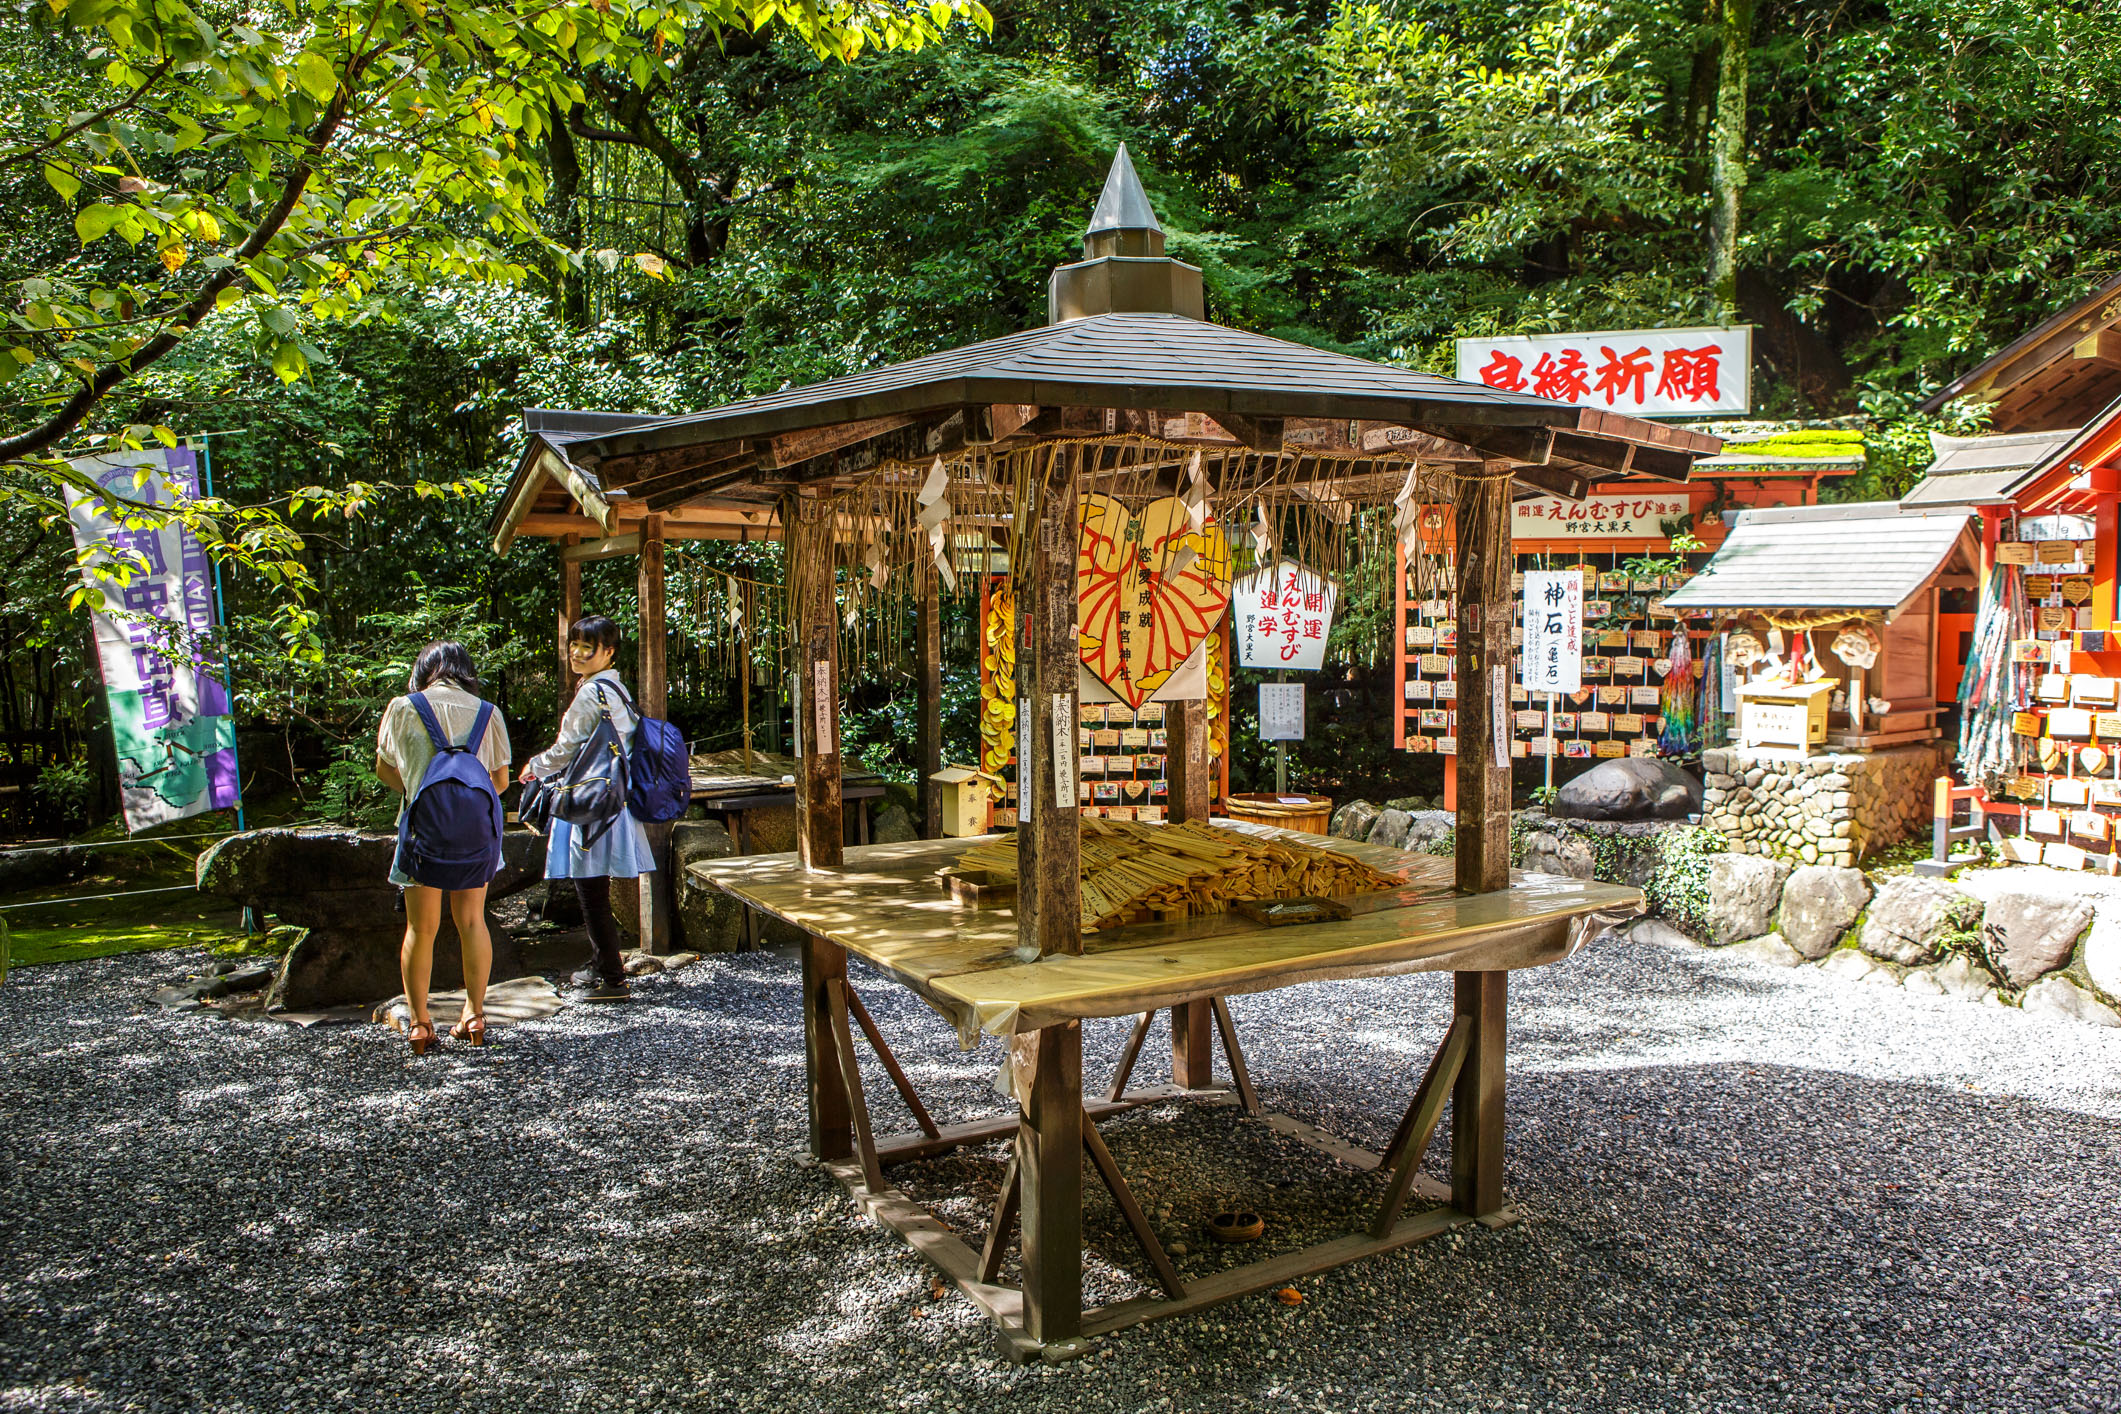 /Guewen/galeries/public/Voyages/Japon/kyoto/temples/Kyoto-Kitsune-temple_002.jpg